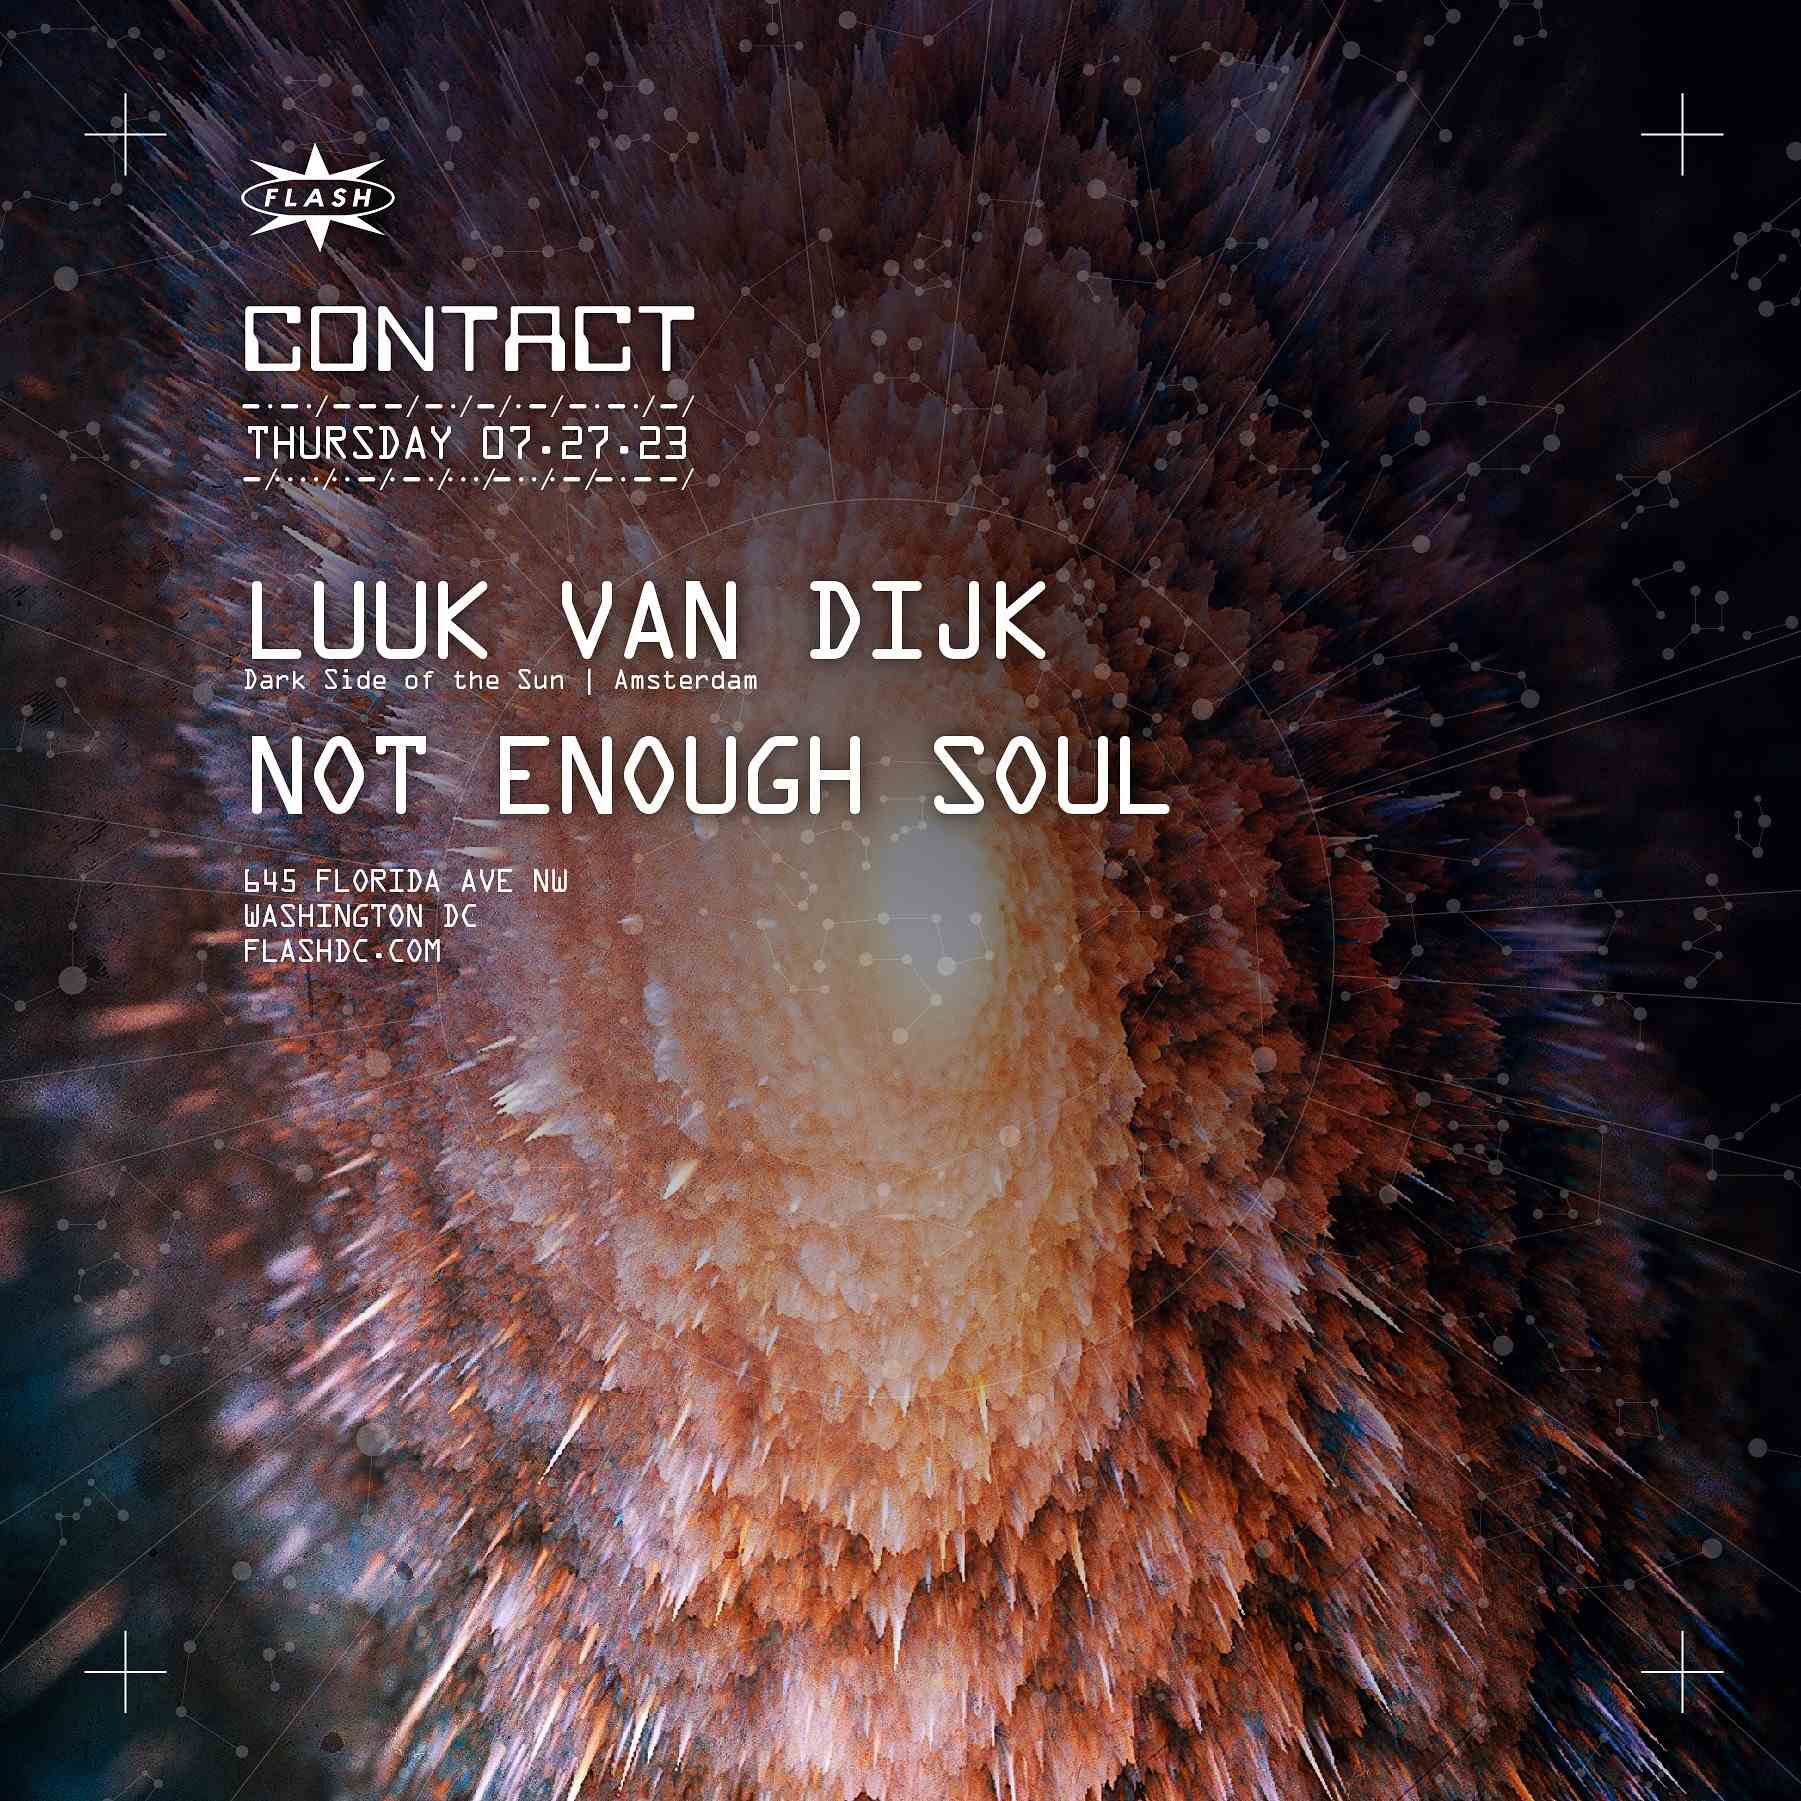 CONTACT: Luuk Van Dijk event flyer